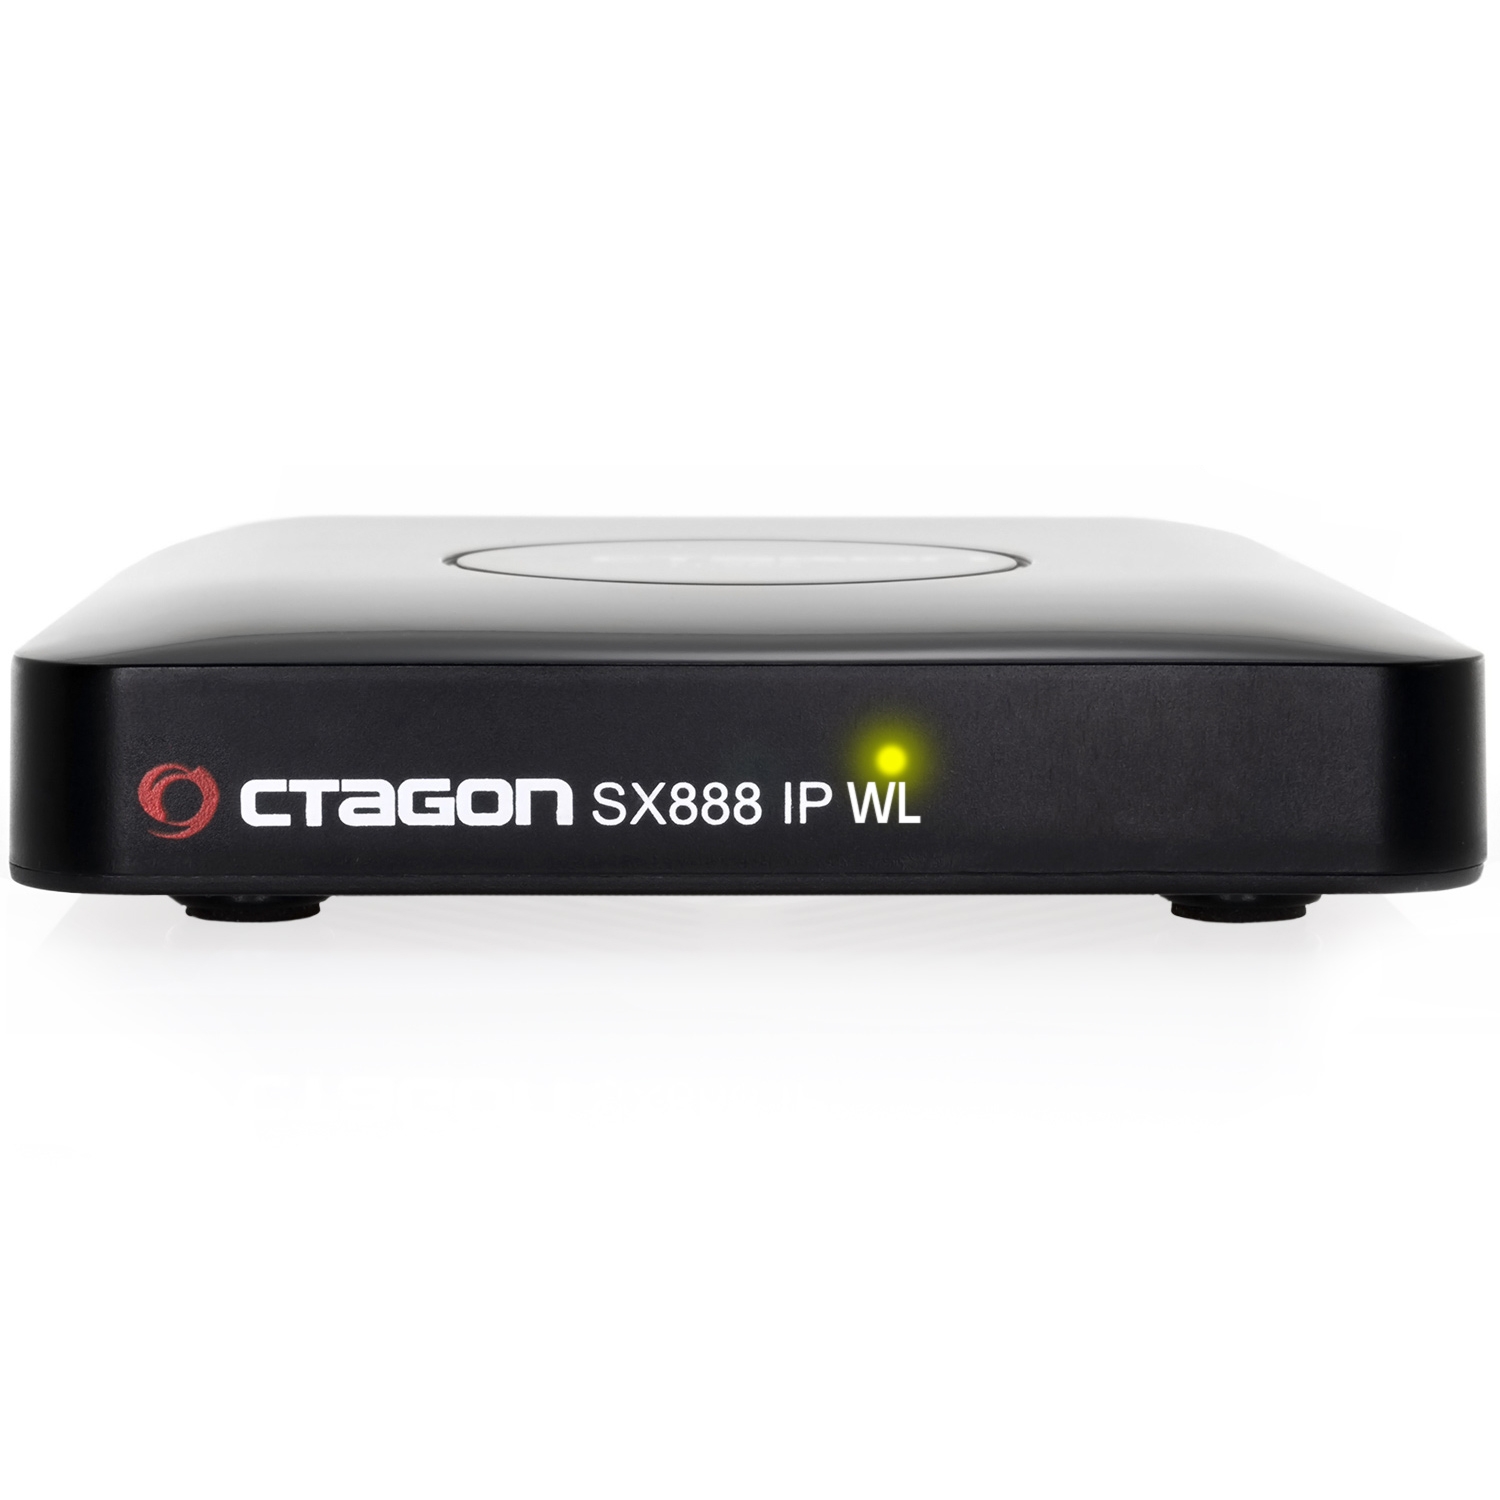 Octagon SX888 WL Wifi IP HEVC Full HD LAN USB H.265 IPTV m3u VOD Stalker Xtream Multimedia Box